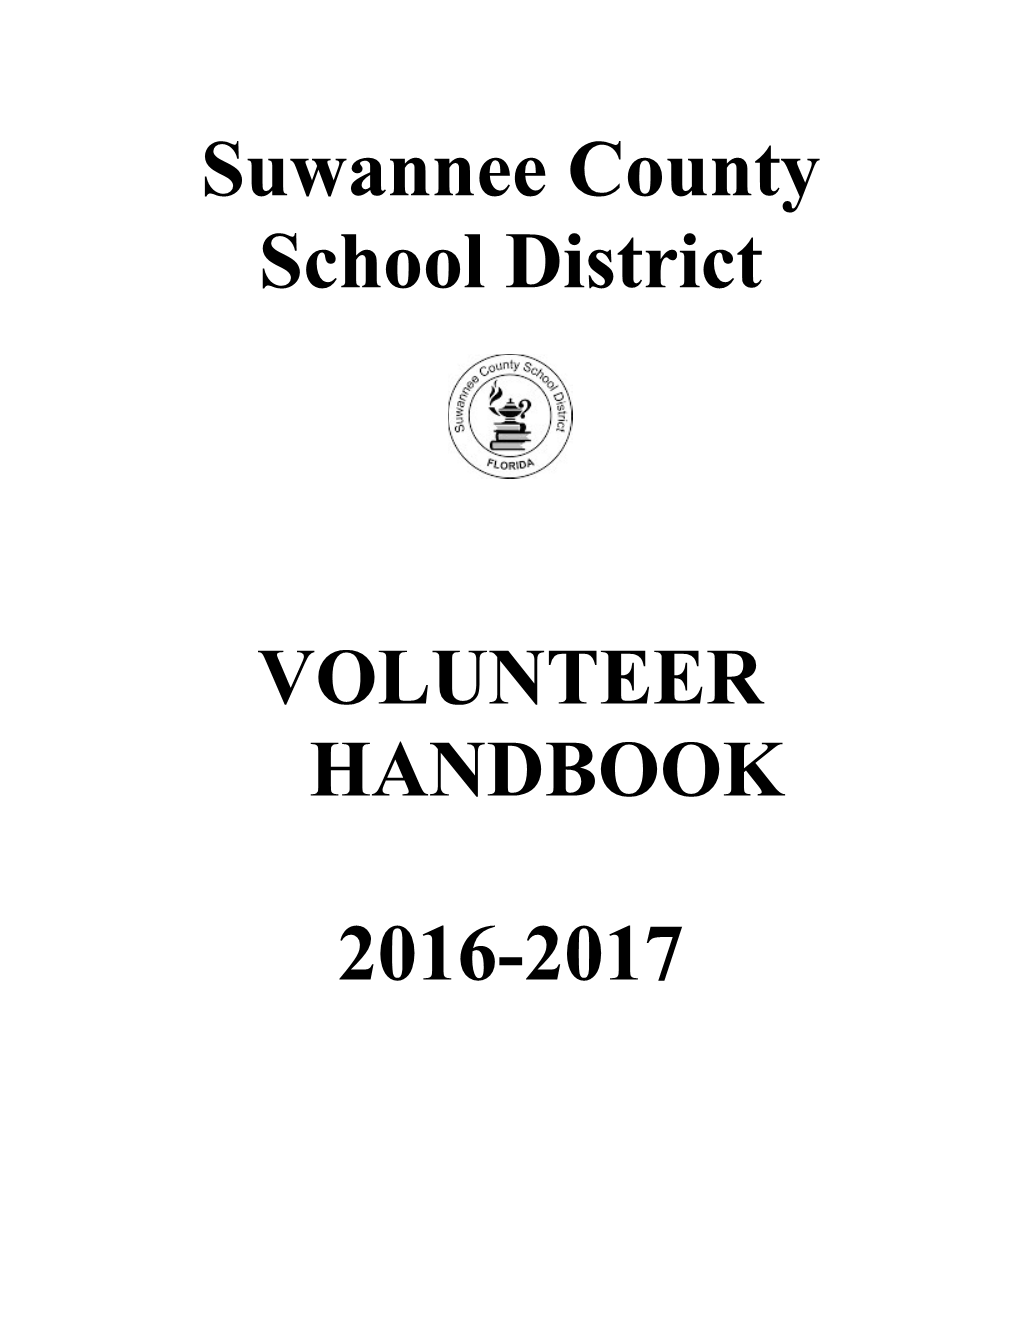 Suwannee County School District